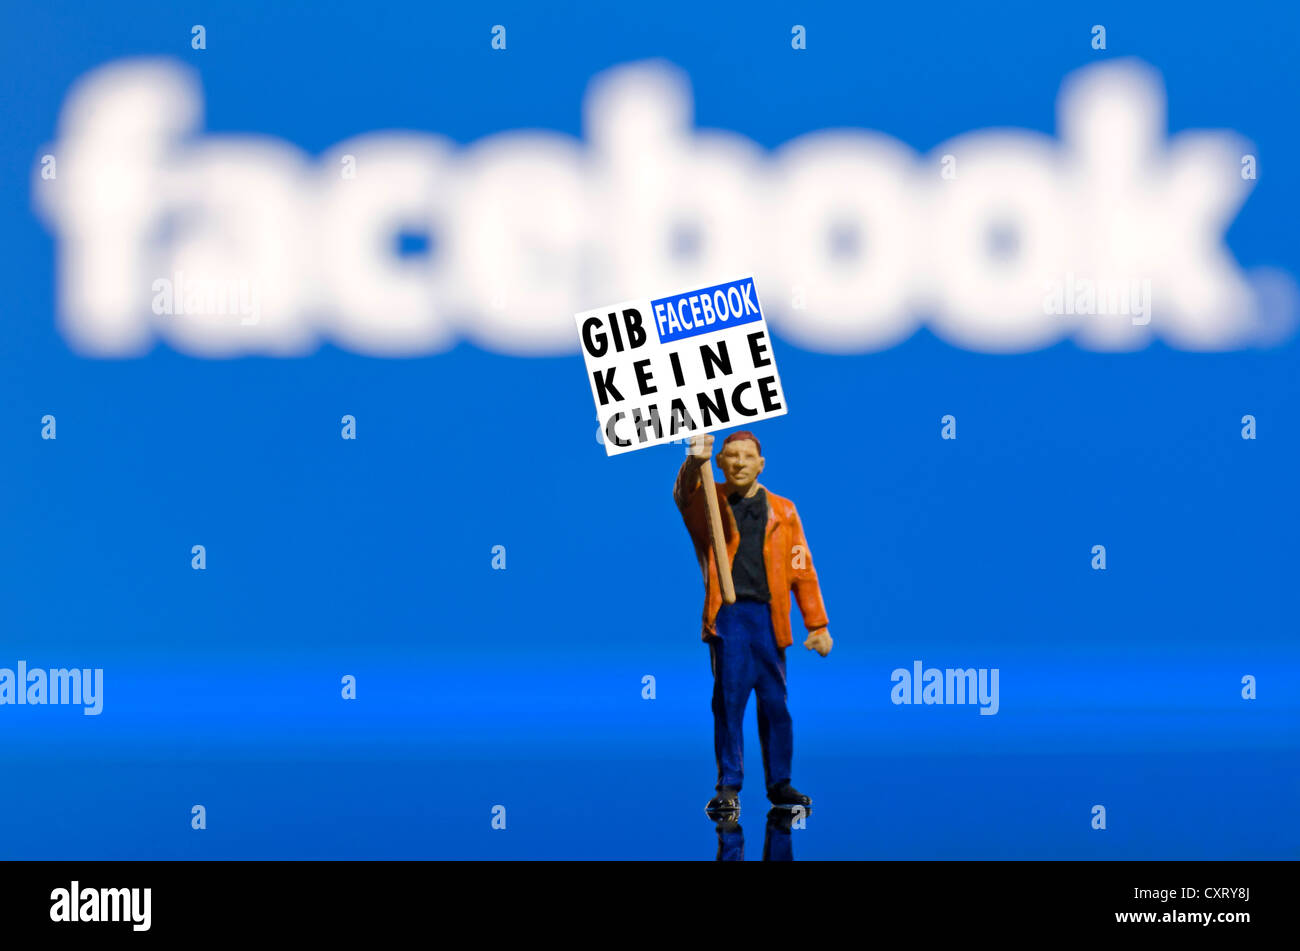 La tenue d'un manifestant, lettrage conseil 'Gib Facebook keine Chance', l'allemand pour 'Pas de chance' pour Facebook, miniature figure debout Banque D'Images